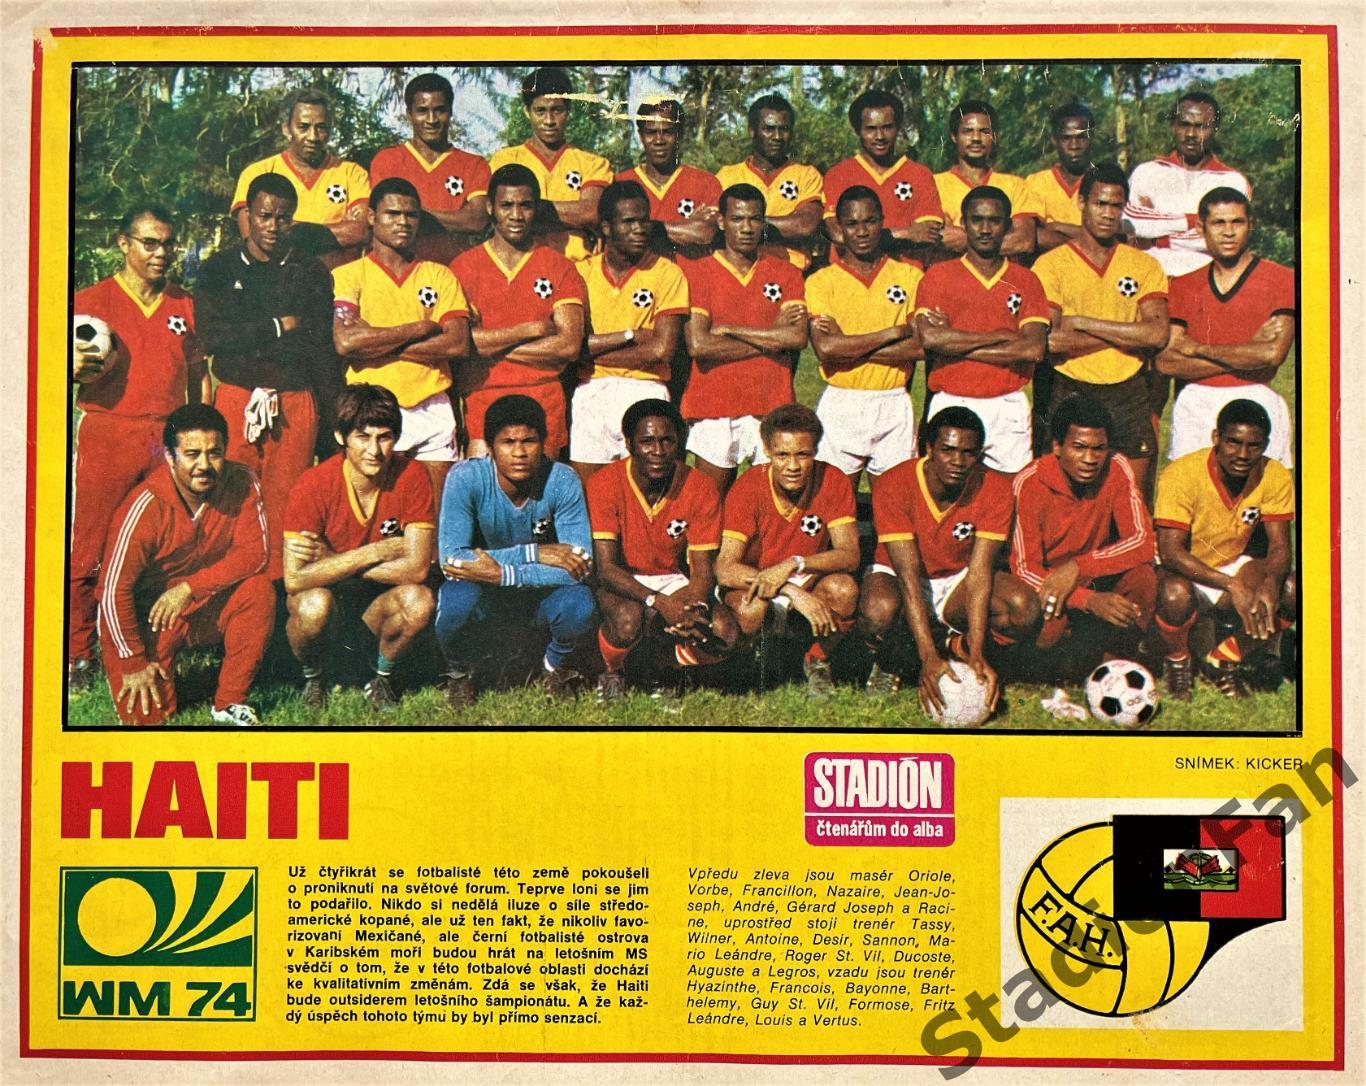 Постер из журнала Стадион (Stadion) - Haiti, 1974